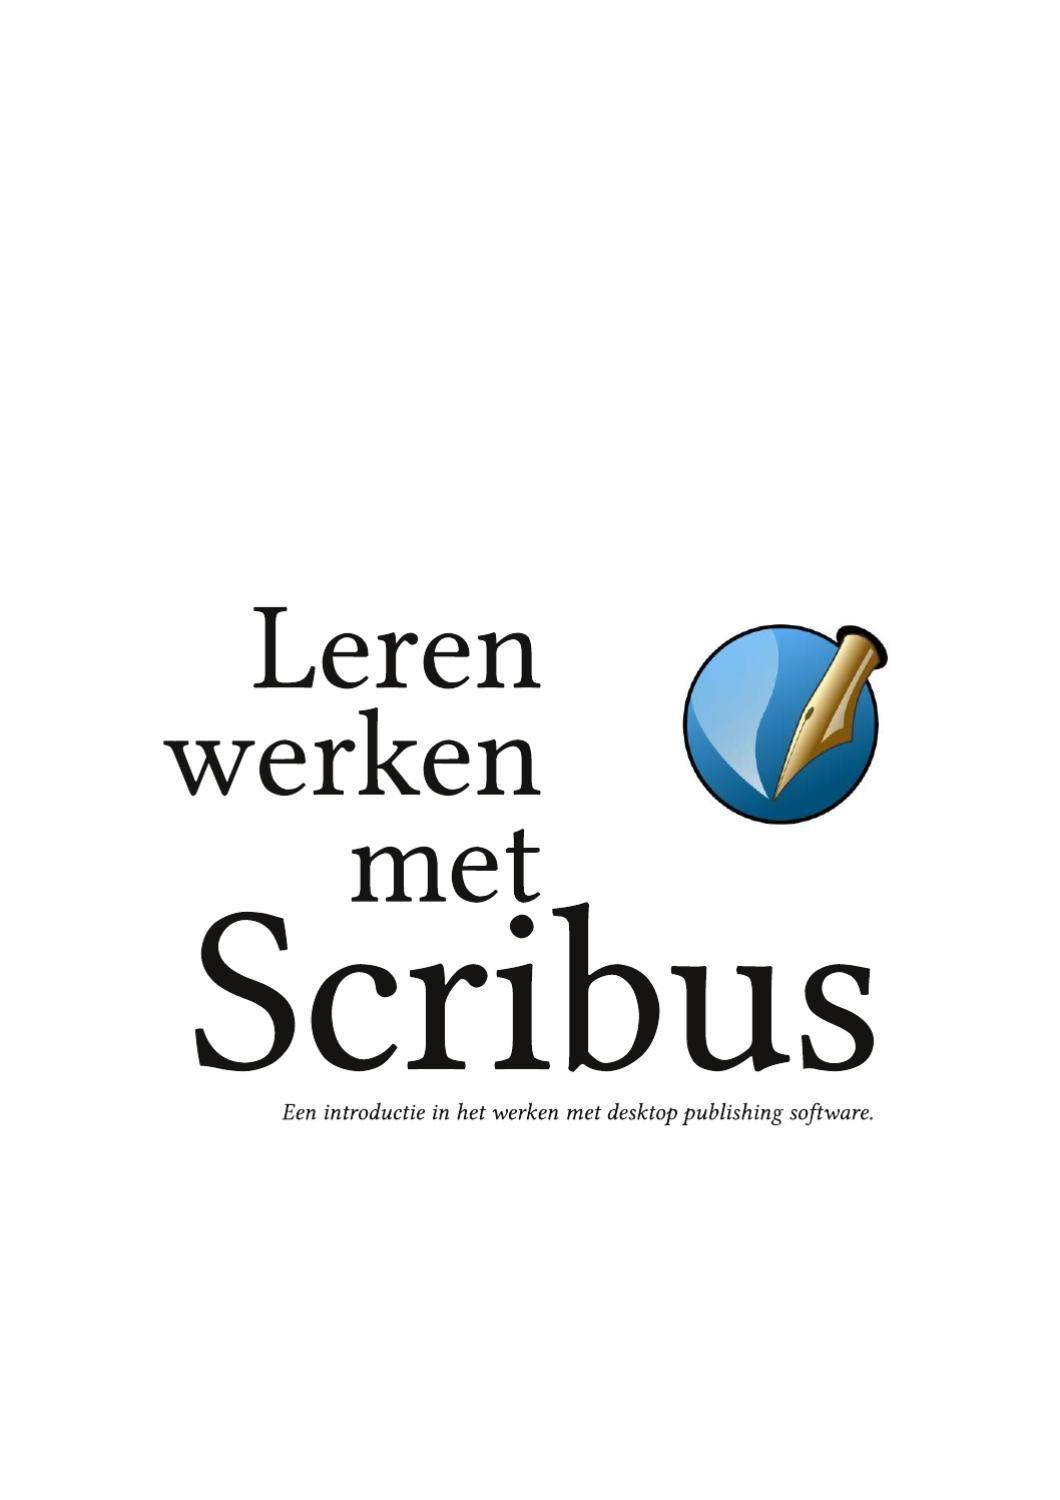 Scribus Logo - Leren werken met Scribus by Scribus Holland - issuu